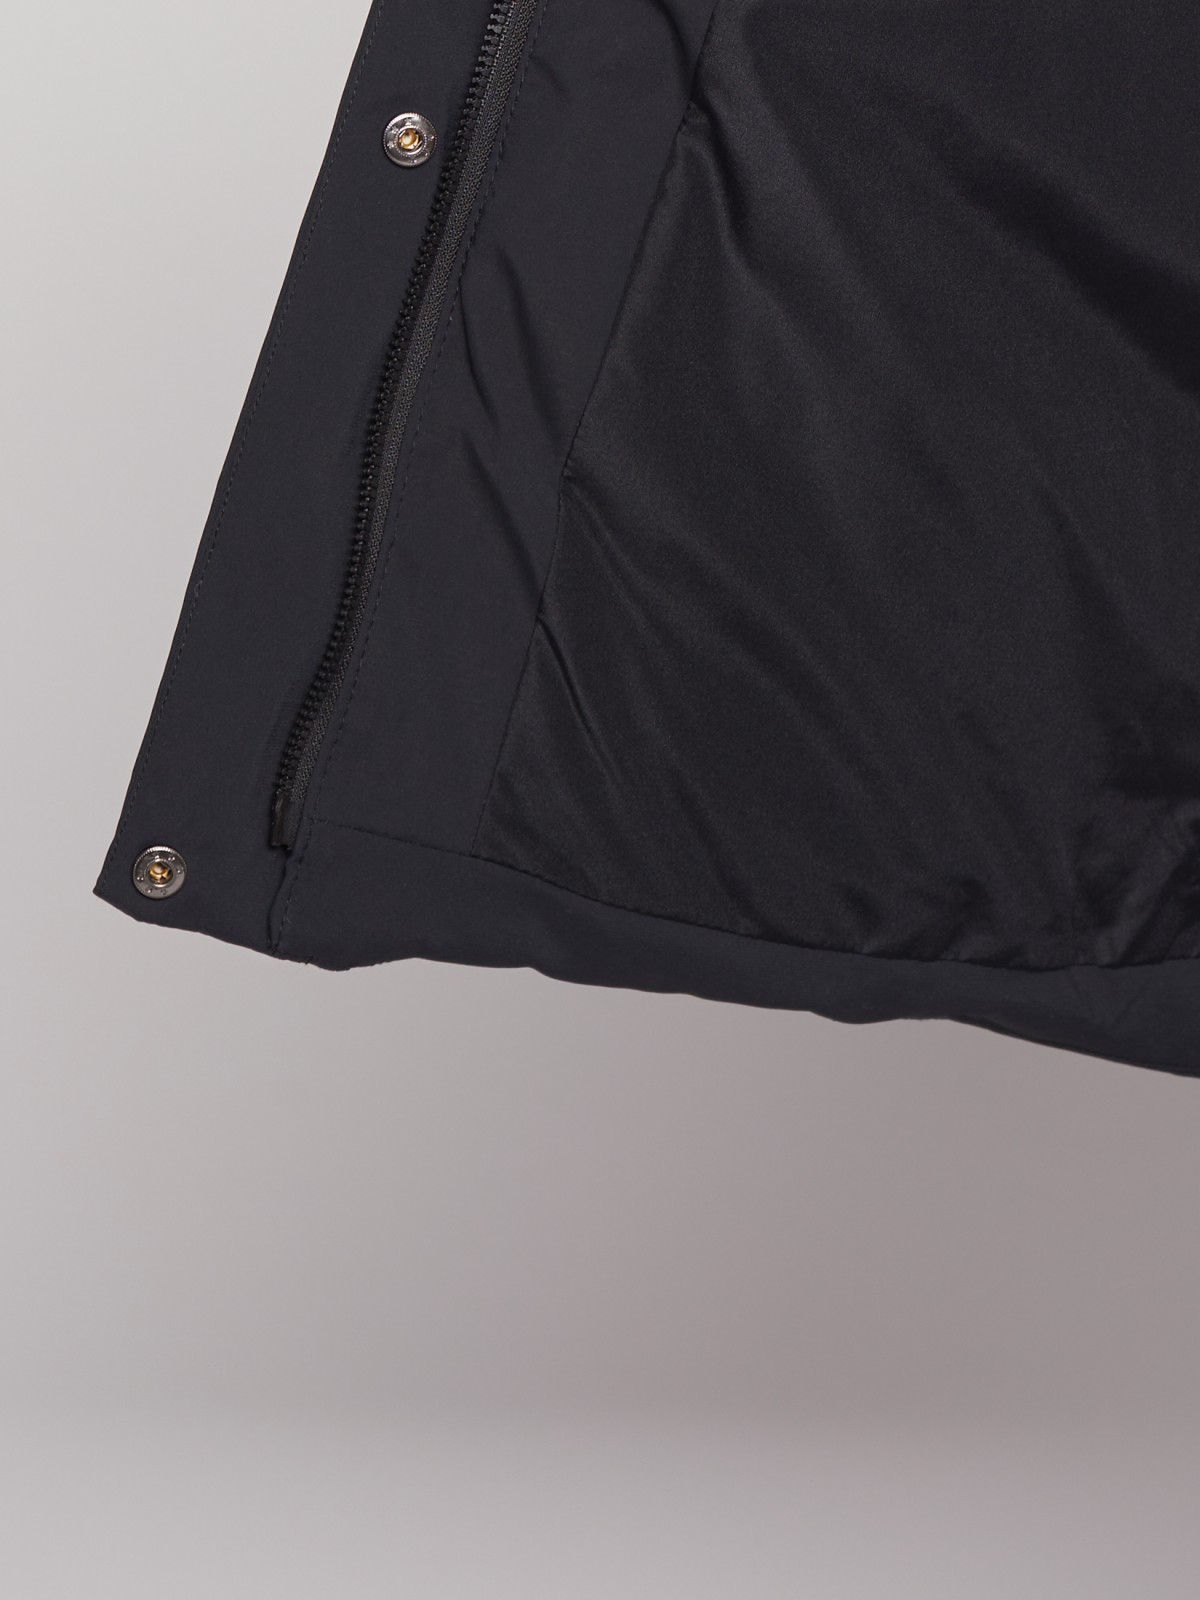 Тёплая куртка с капюшоном zolla 022335102134, цвет черный, размер XS - фото 6